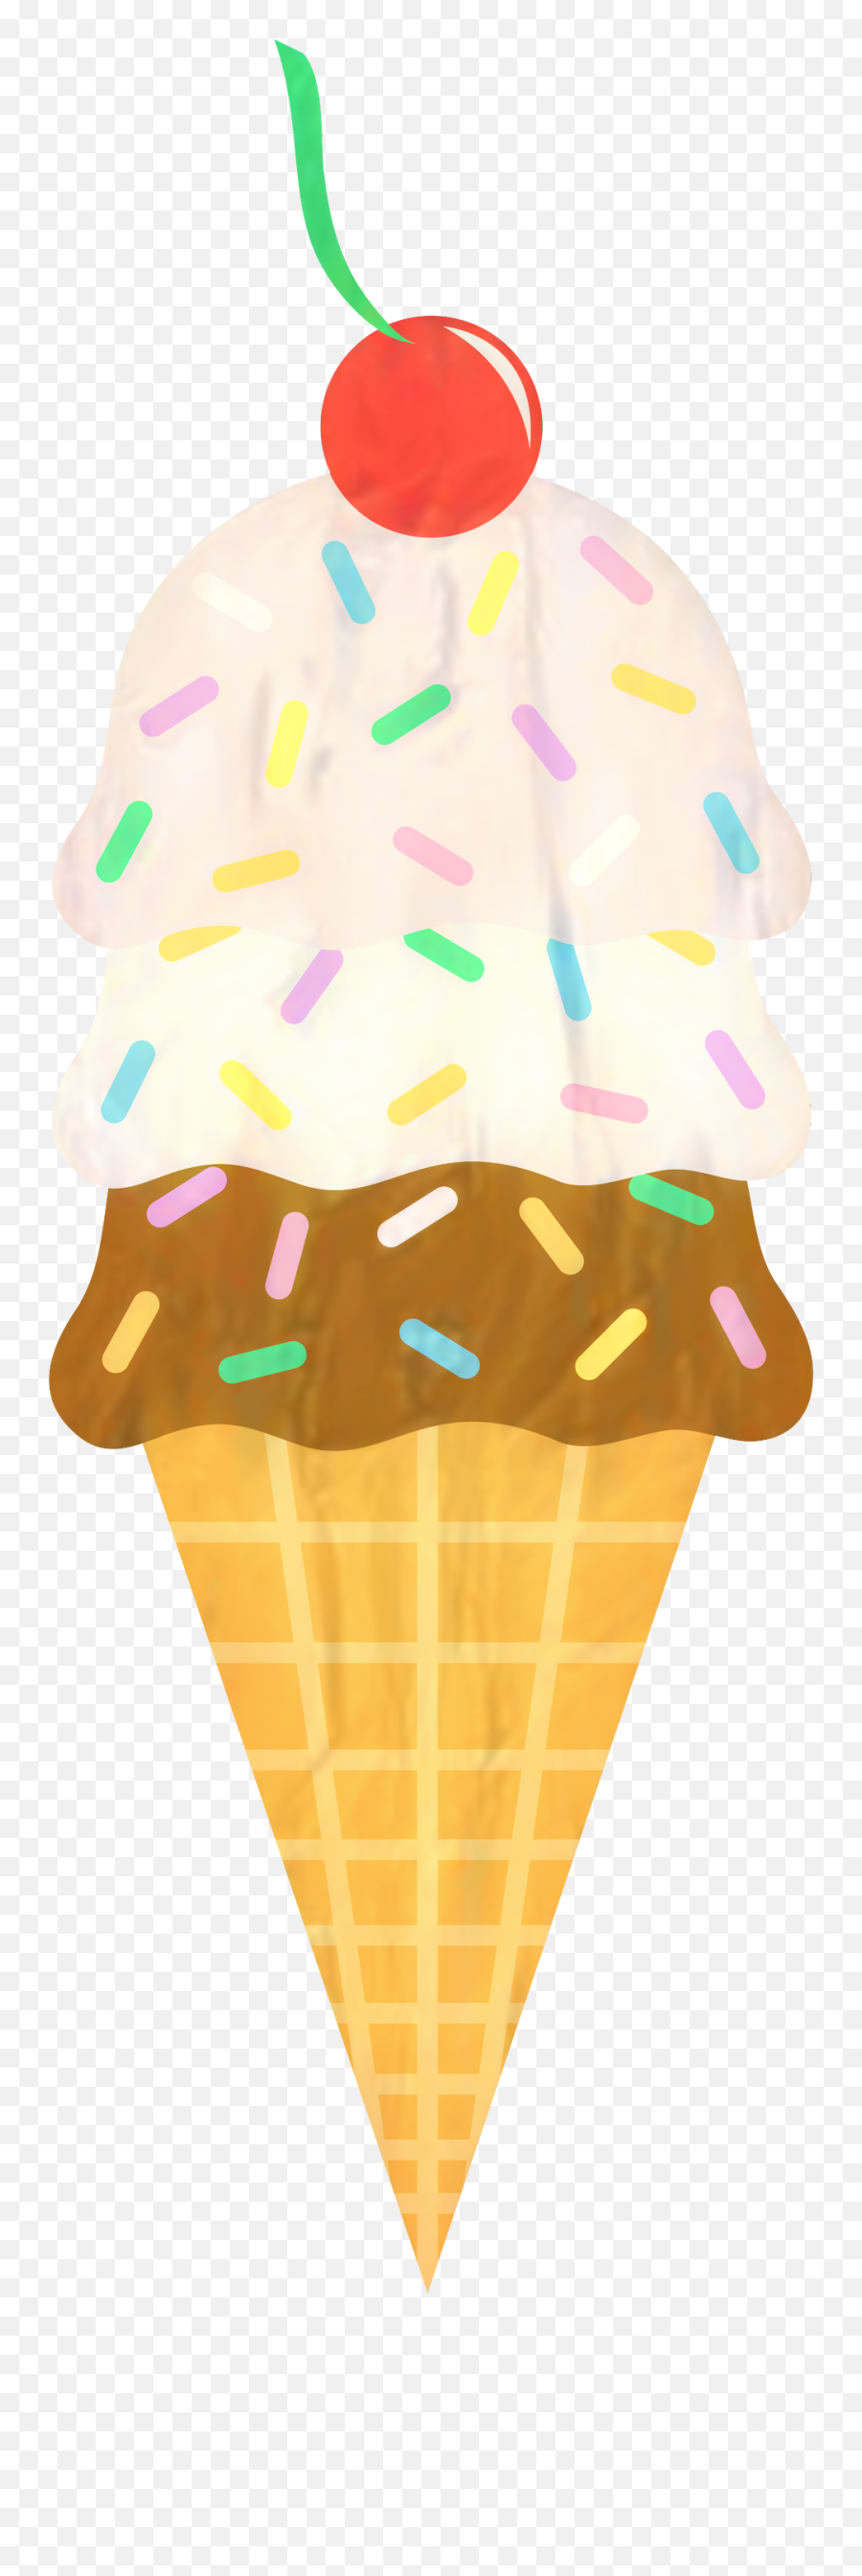 Ice Cream Cones Sundae Clip Art Emoji,Ice Cream Cone Transparent Background